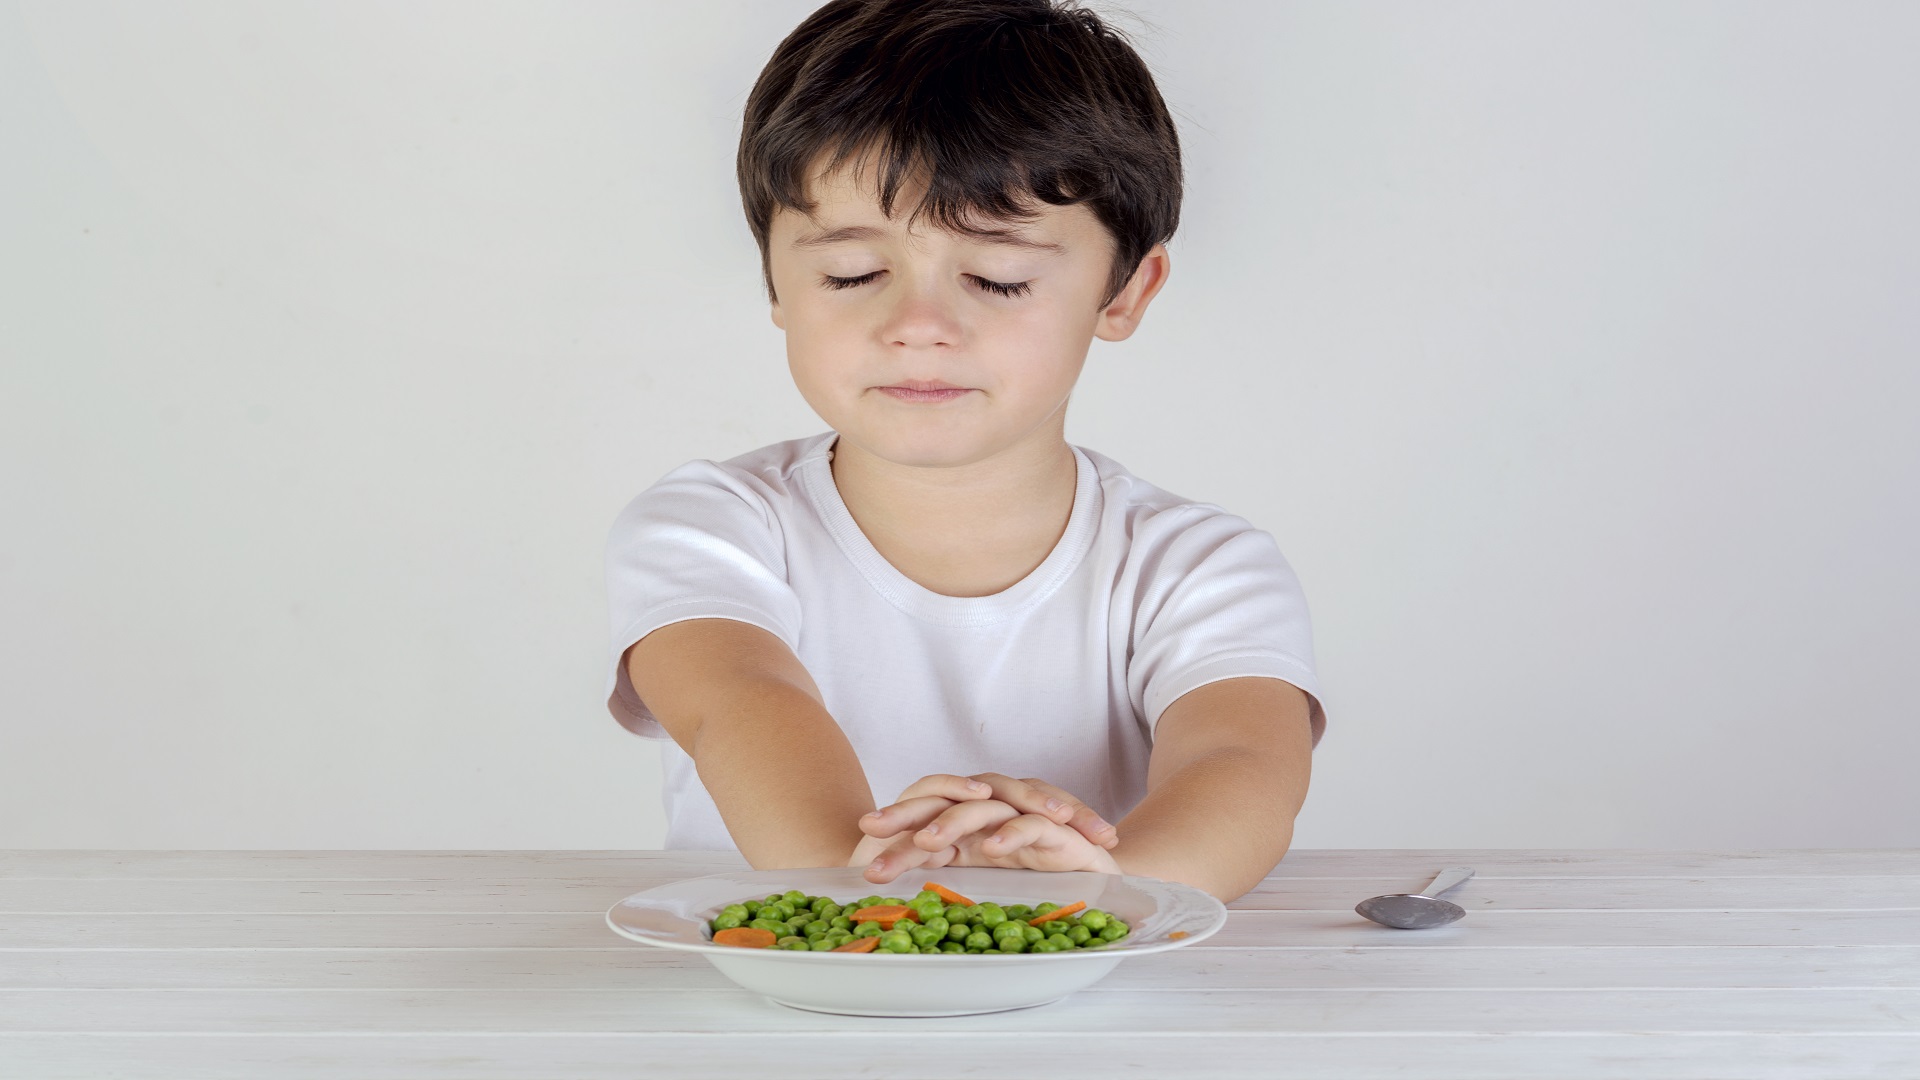 نصائح لحماية ابنك المراهق من اضطرابات الأكل